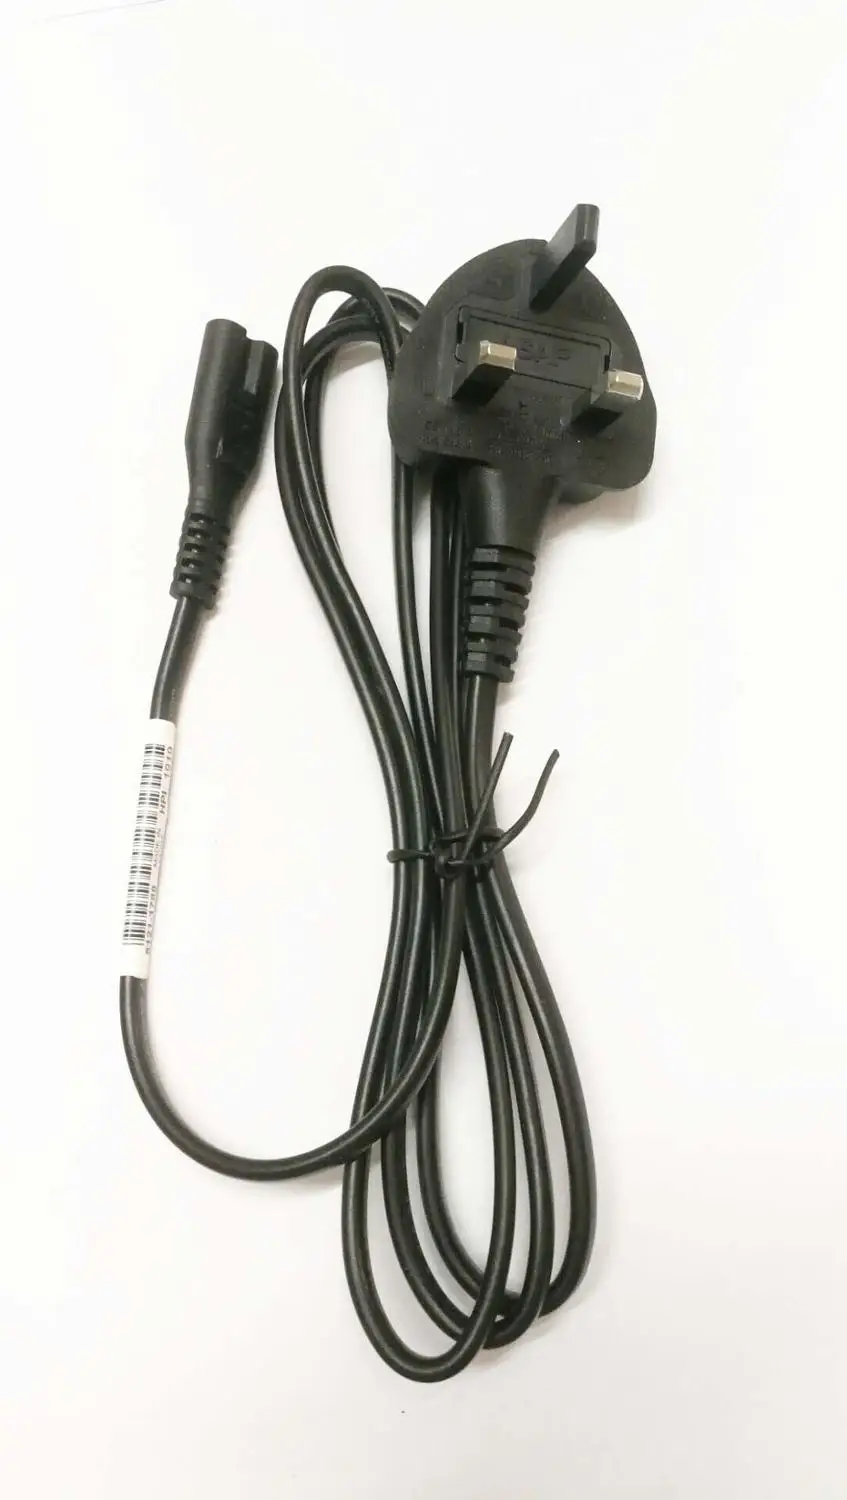 20ШТ Британский Удлинитель питания British Plug Main C7 Рисунок 8 Адаптер питания Кабель Питания Провода для зарядного устройства Laotop PSP 4